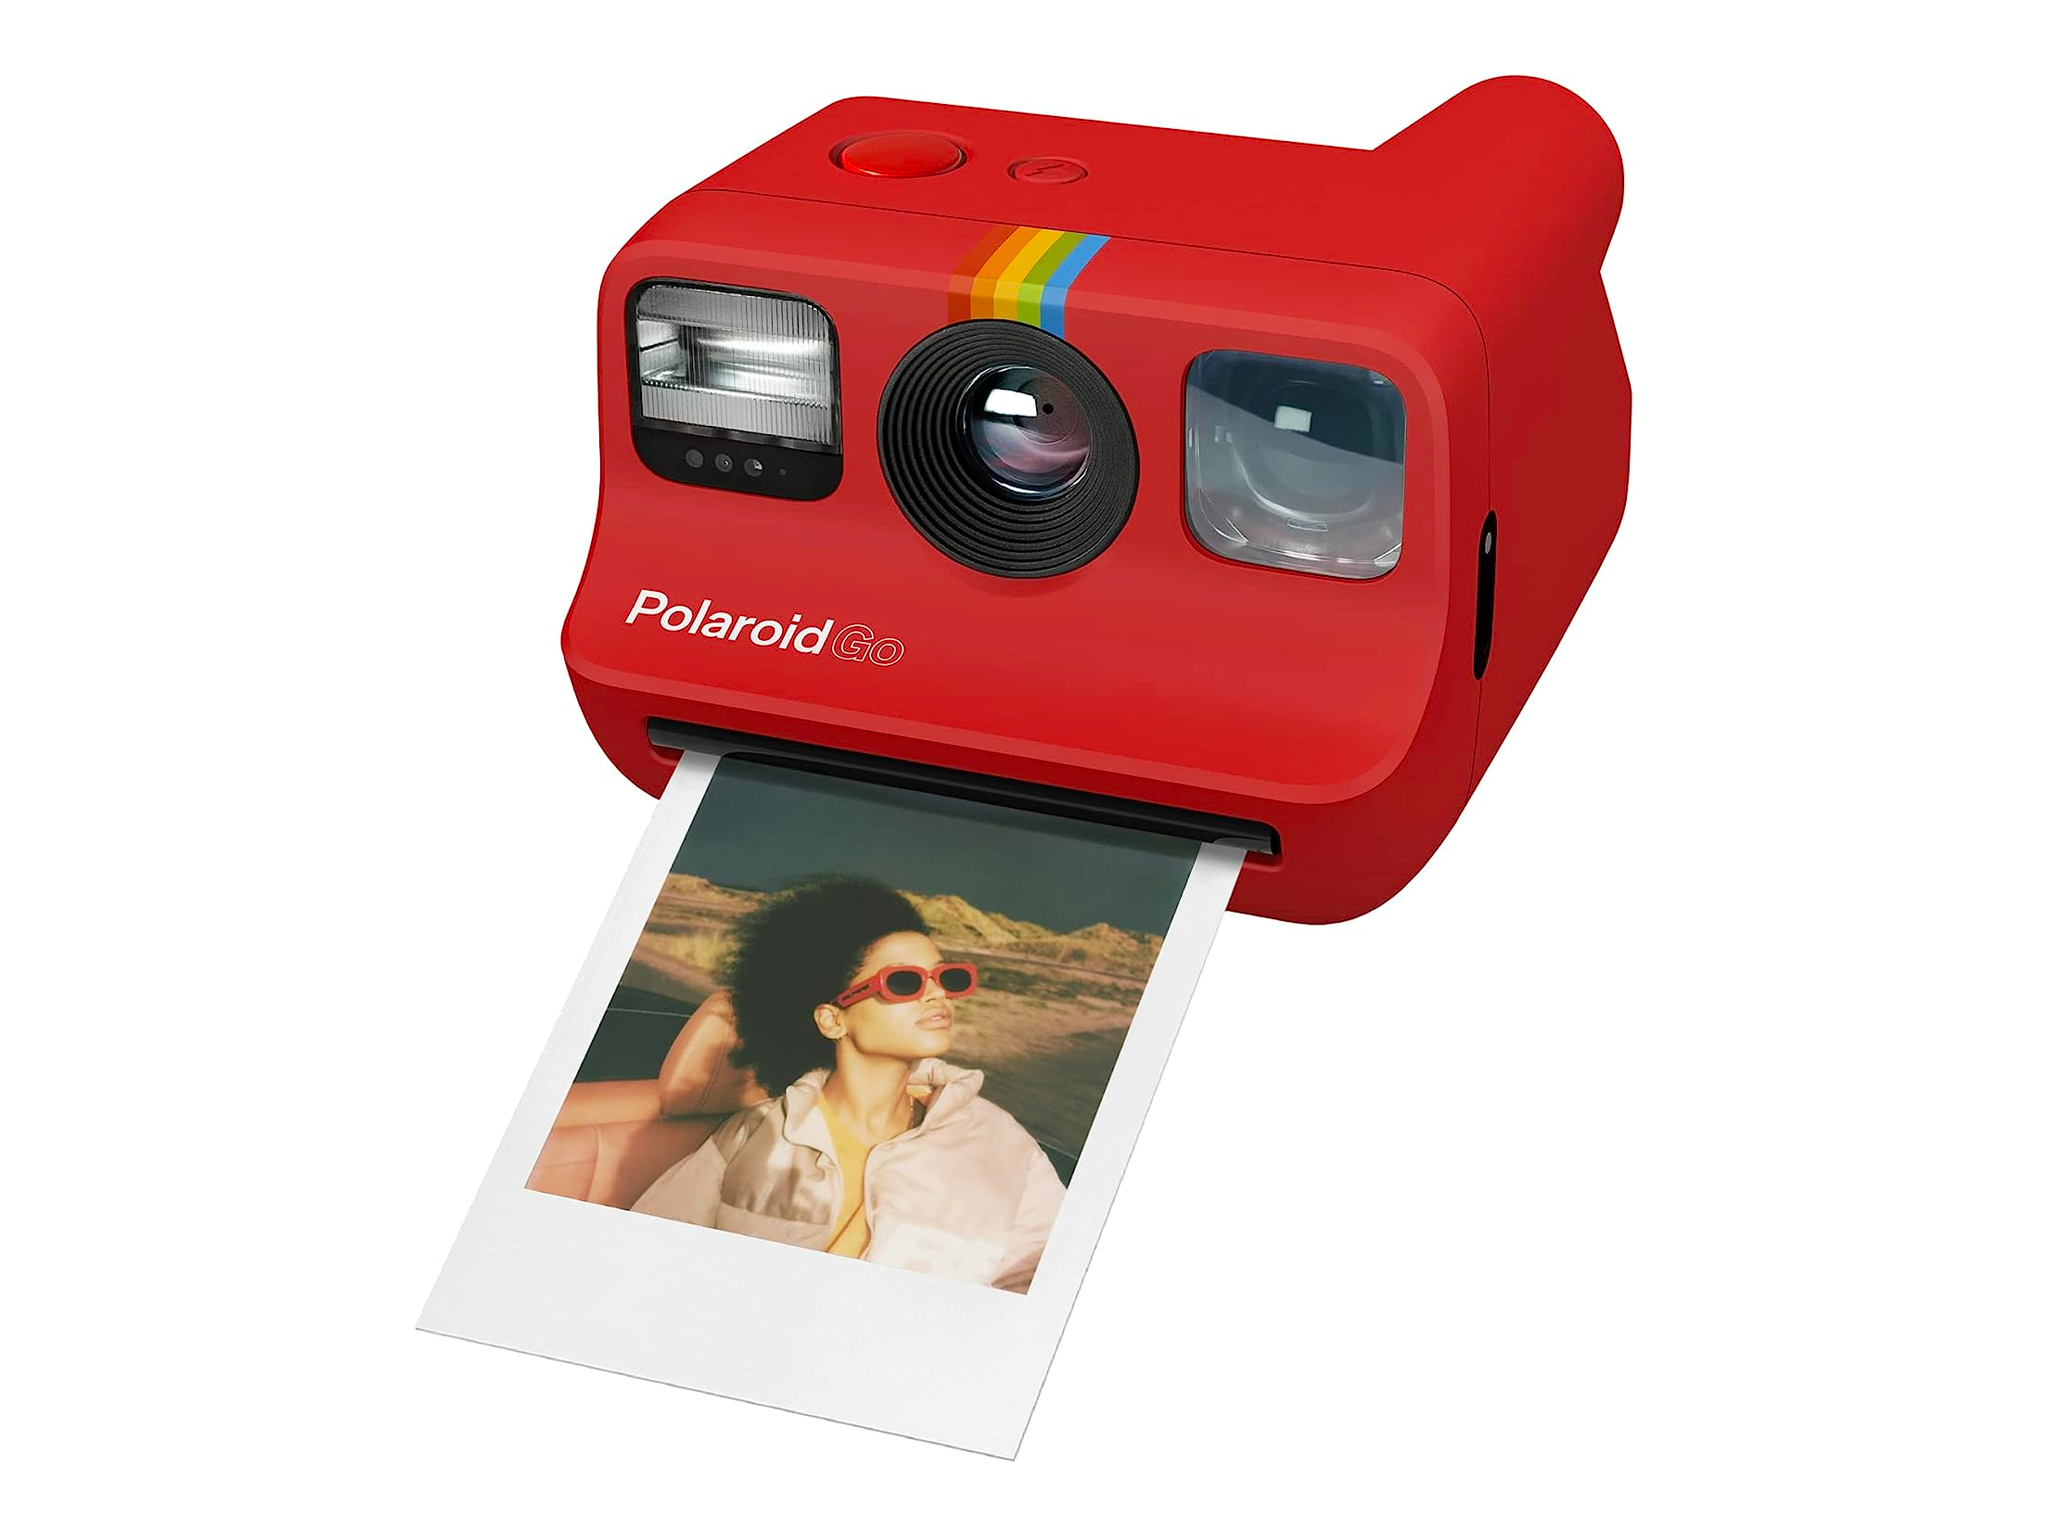 Polaroid-go-indybest